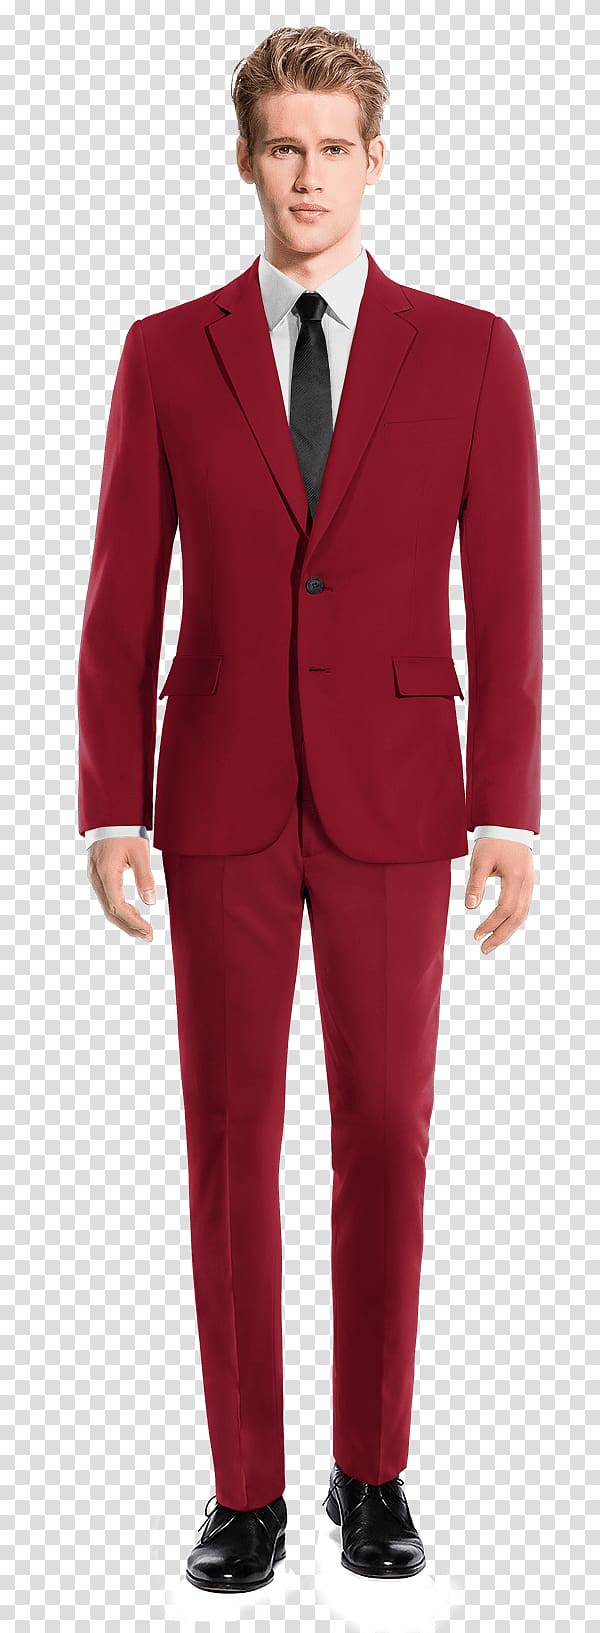 Suit Tweed Wool Tuxedo Pants, suit transparent background PNG clipart